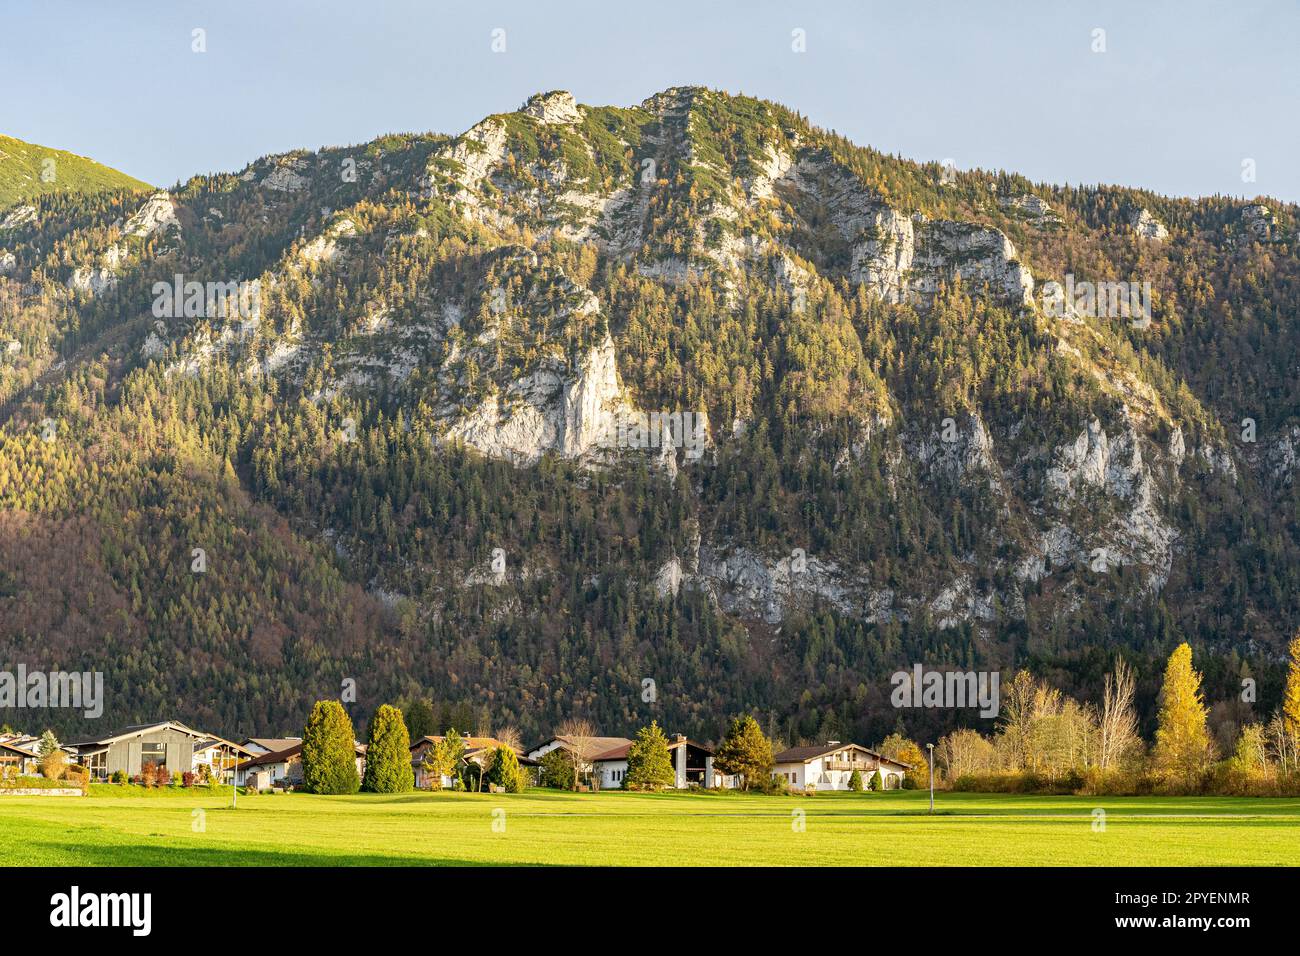 Catena montuosa massiccia, foresta e prati delle Alpi tedesche Foto Stock